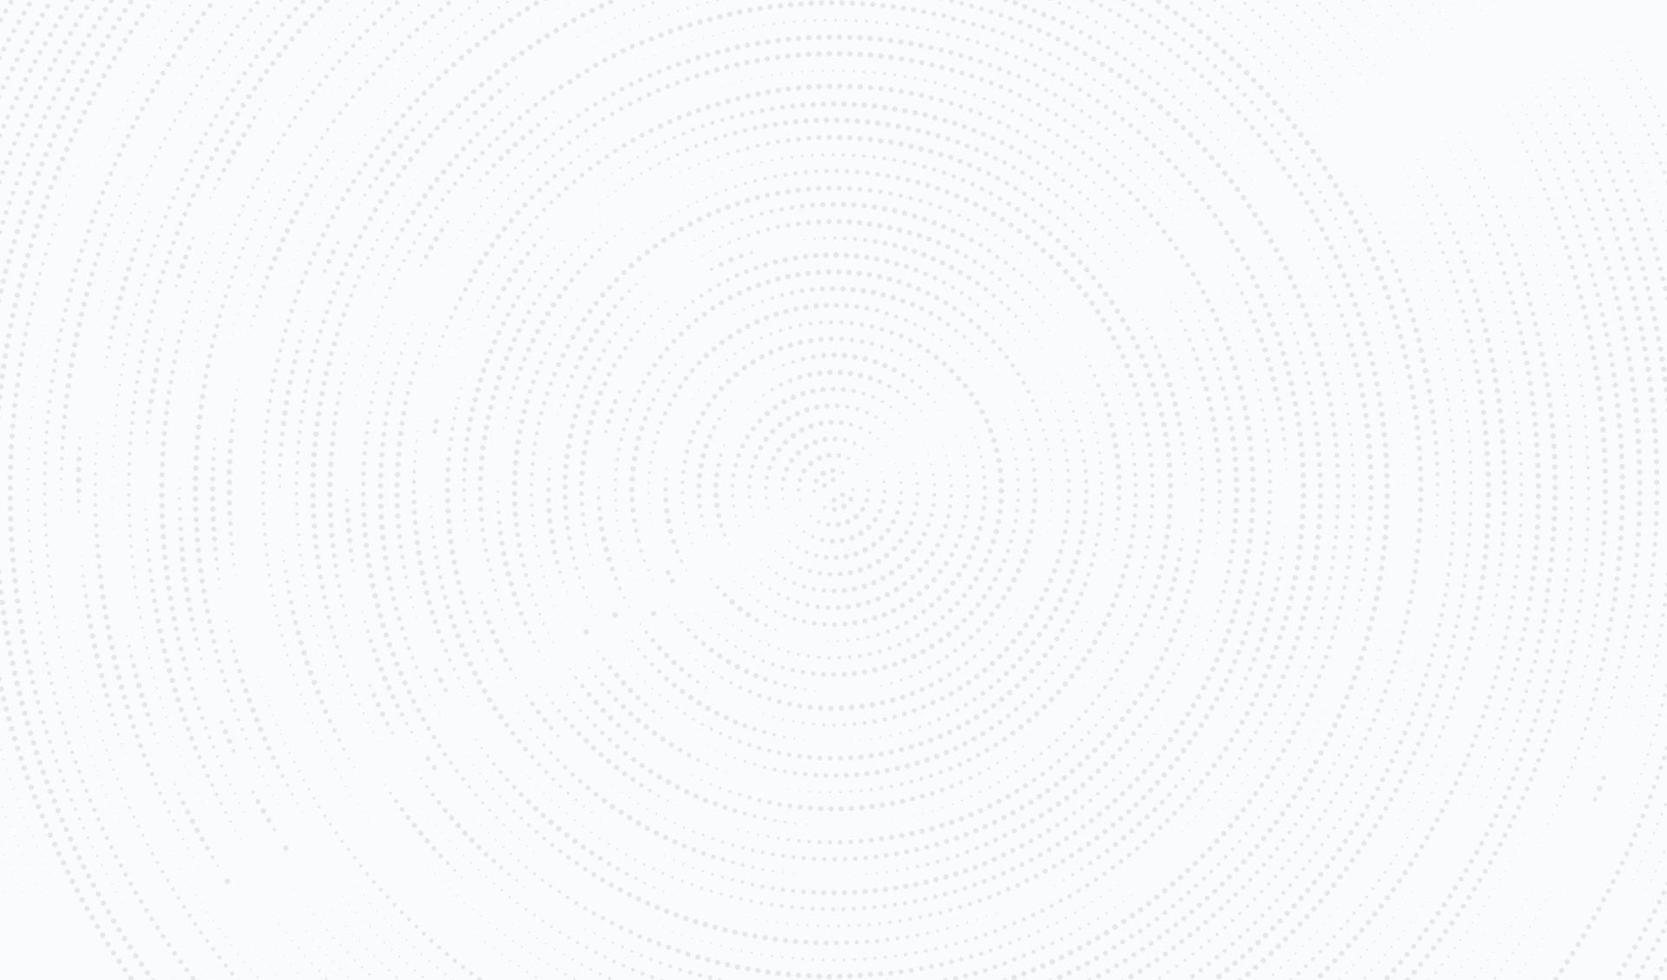 abstracte radiale cirkel grijze stippen textuur op witte achtergrond in minimalistische stijl. zilver cirkelvormig halftoonpatroonontwerp. u kunt gebruiken voor voorbladsjabloon, poster, flyer, printadvertentie. vector illustratie